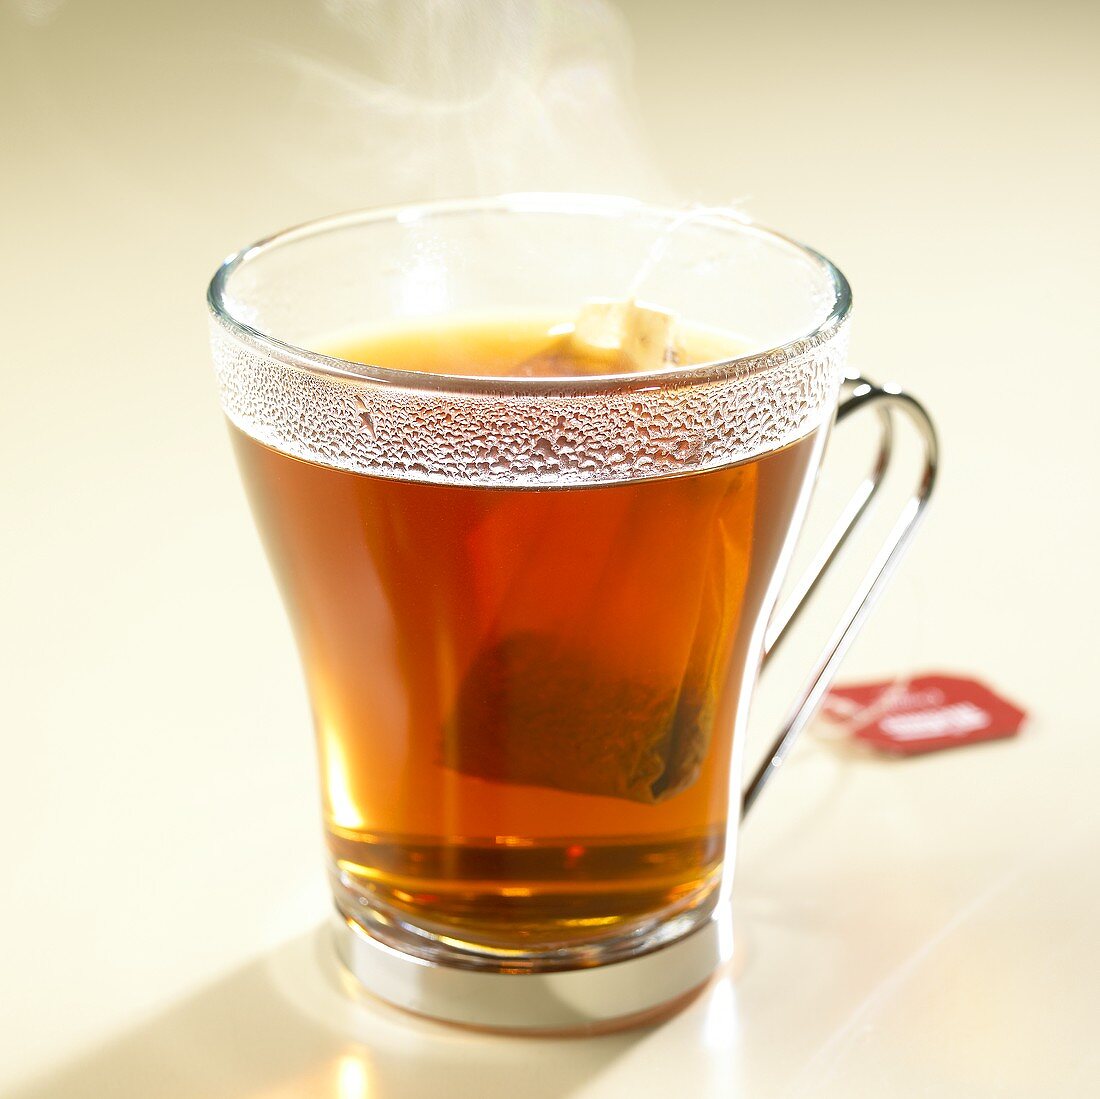 Heisser Rotbusch-Vanille-Tee mit Teebeutel im Glas